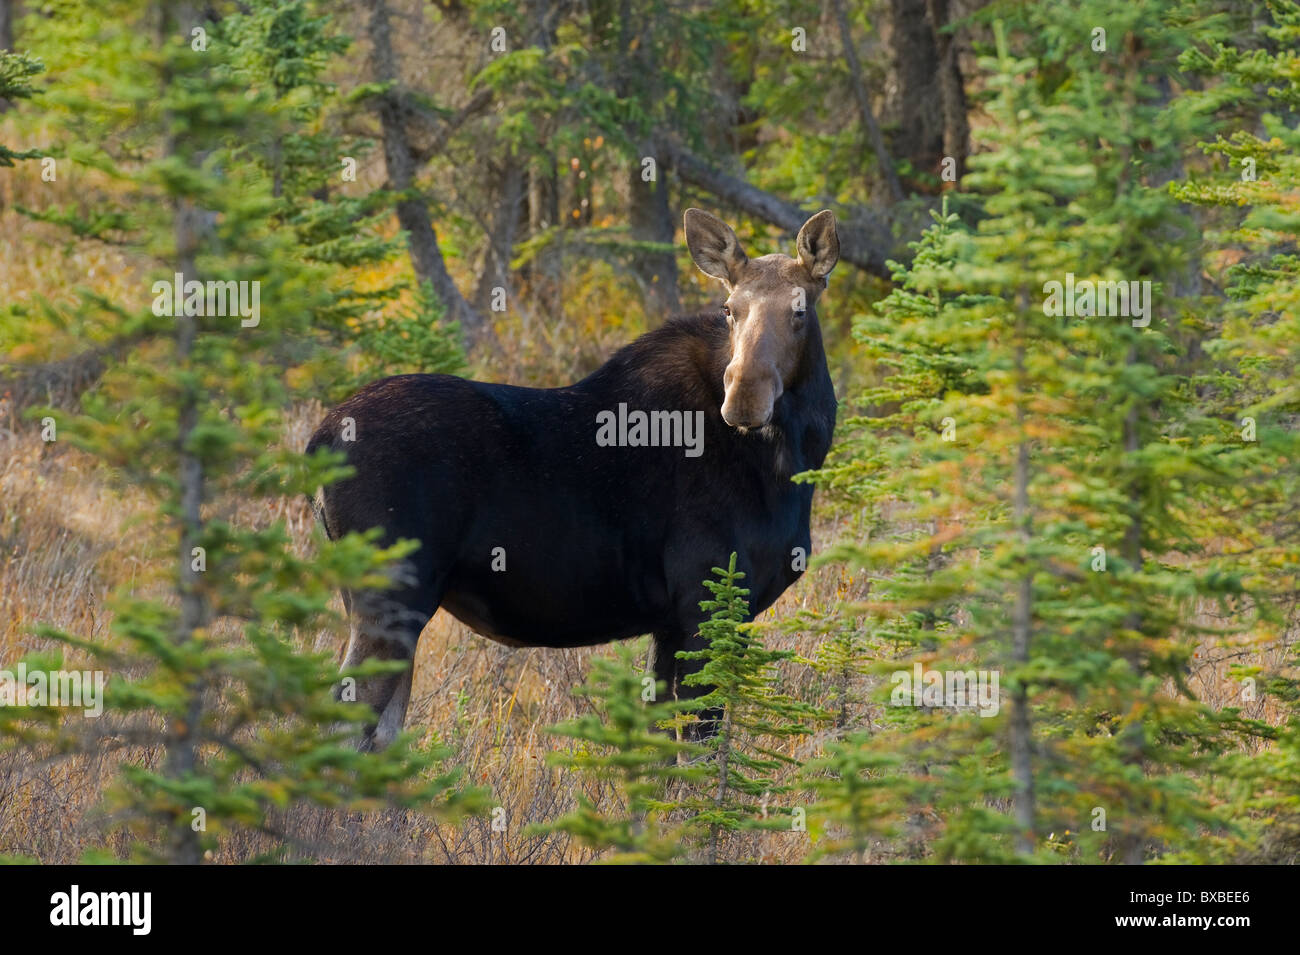 Ein horizontales Bild eine wilde Kuh Elch stehen in einem Waldgebiet wacher Blick zurück über die Schulter auf Anzeichen von Gefahr Stockfoto